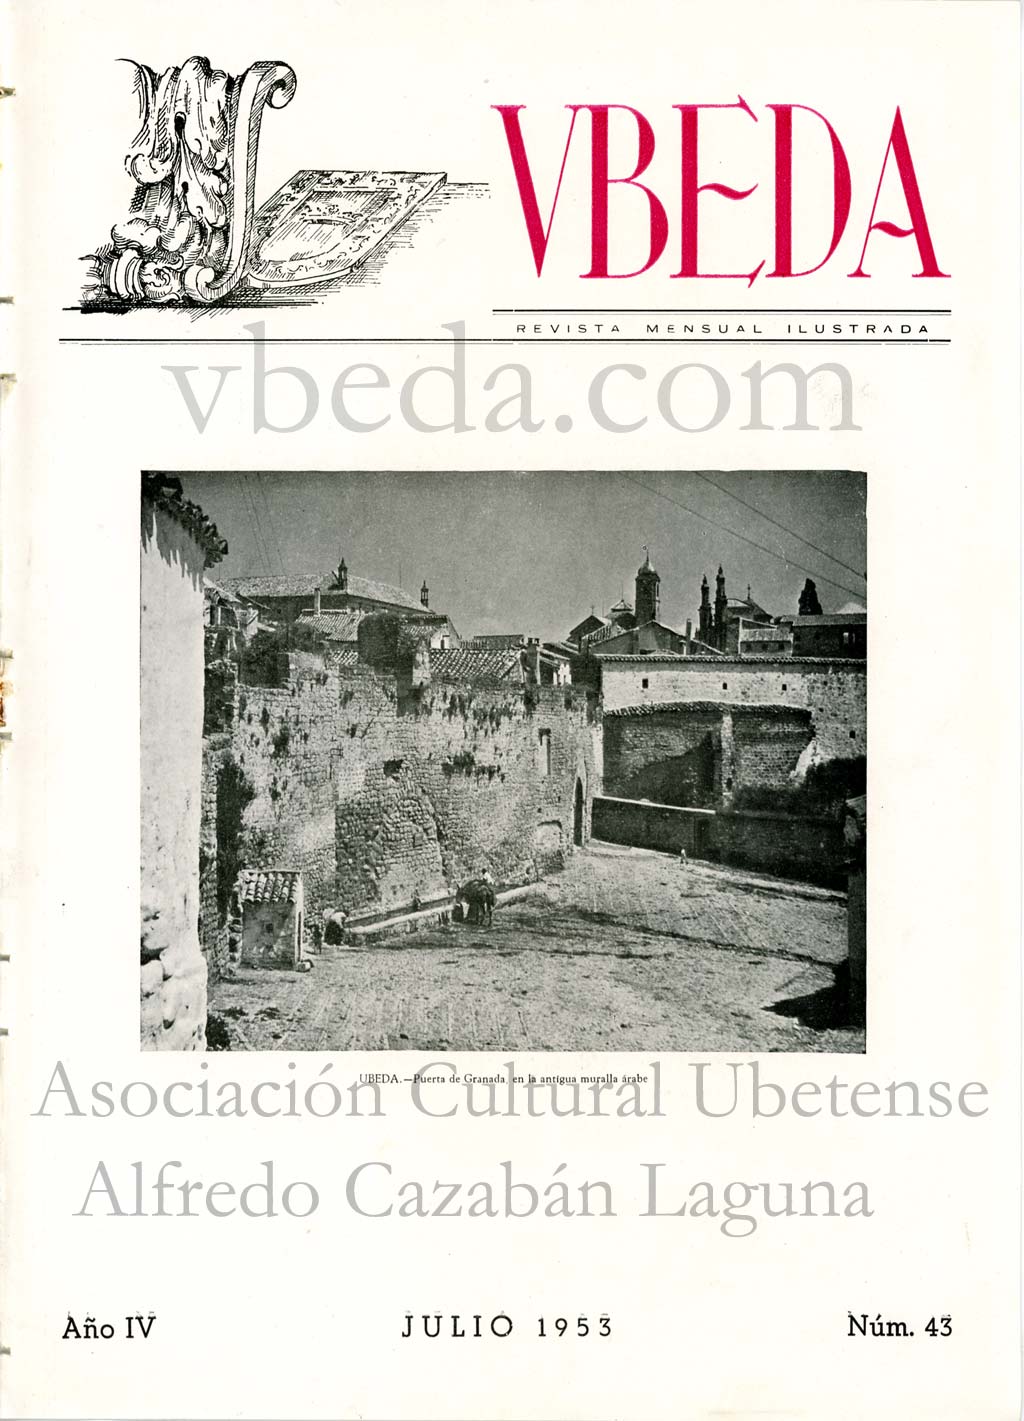 Revista Vbeda. AÃ±o 4. NÂº 43 de julio de 1953